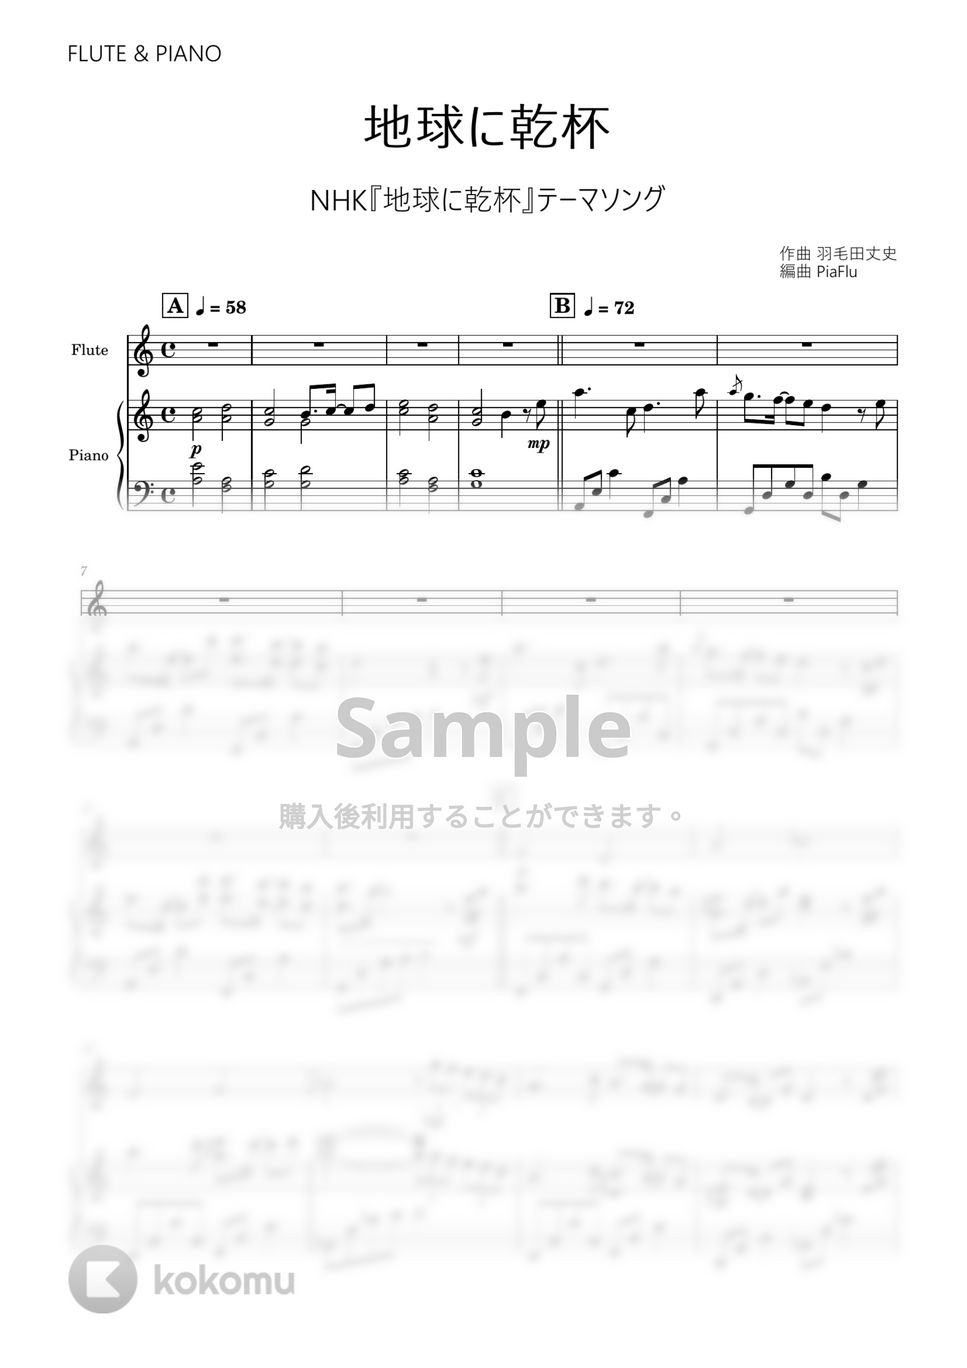 羽毛田丈史 - 地球に乾杯 (フルート&ピアノ伴奏) by PiaFlu